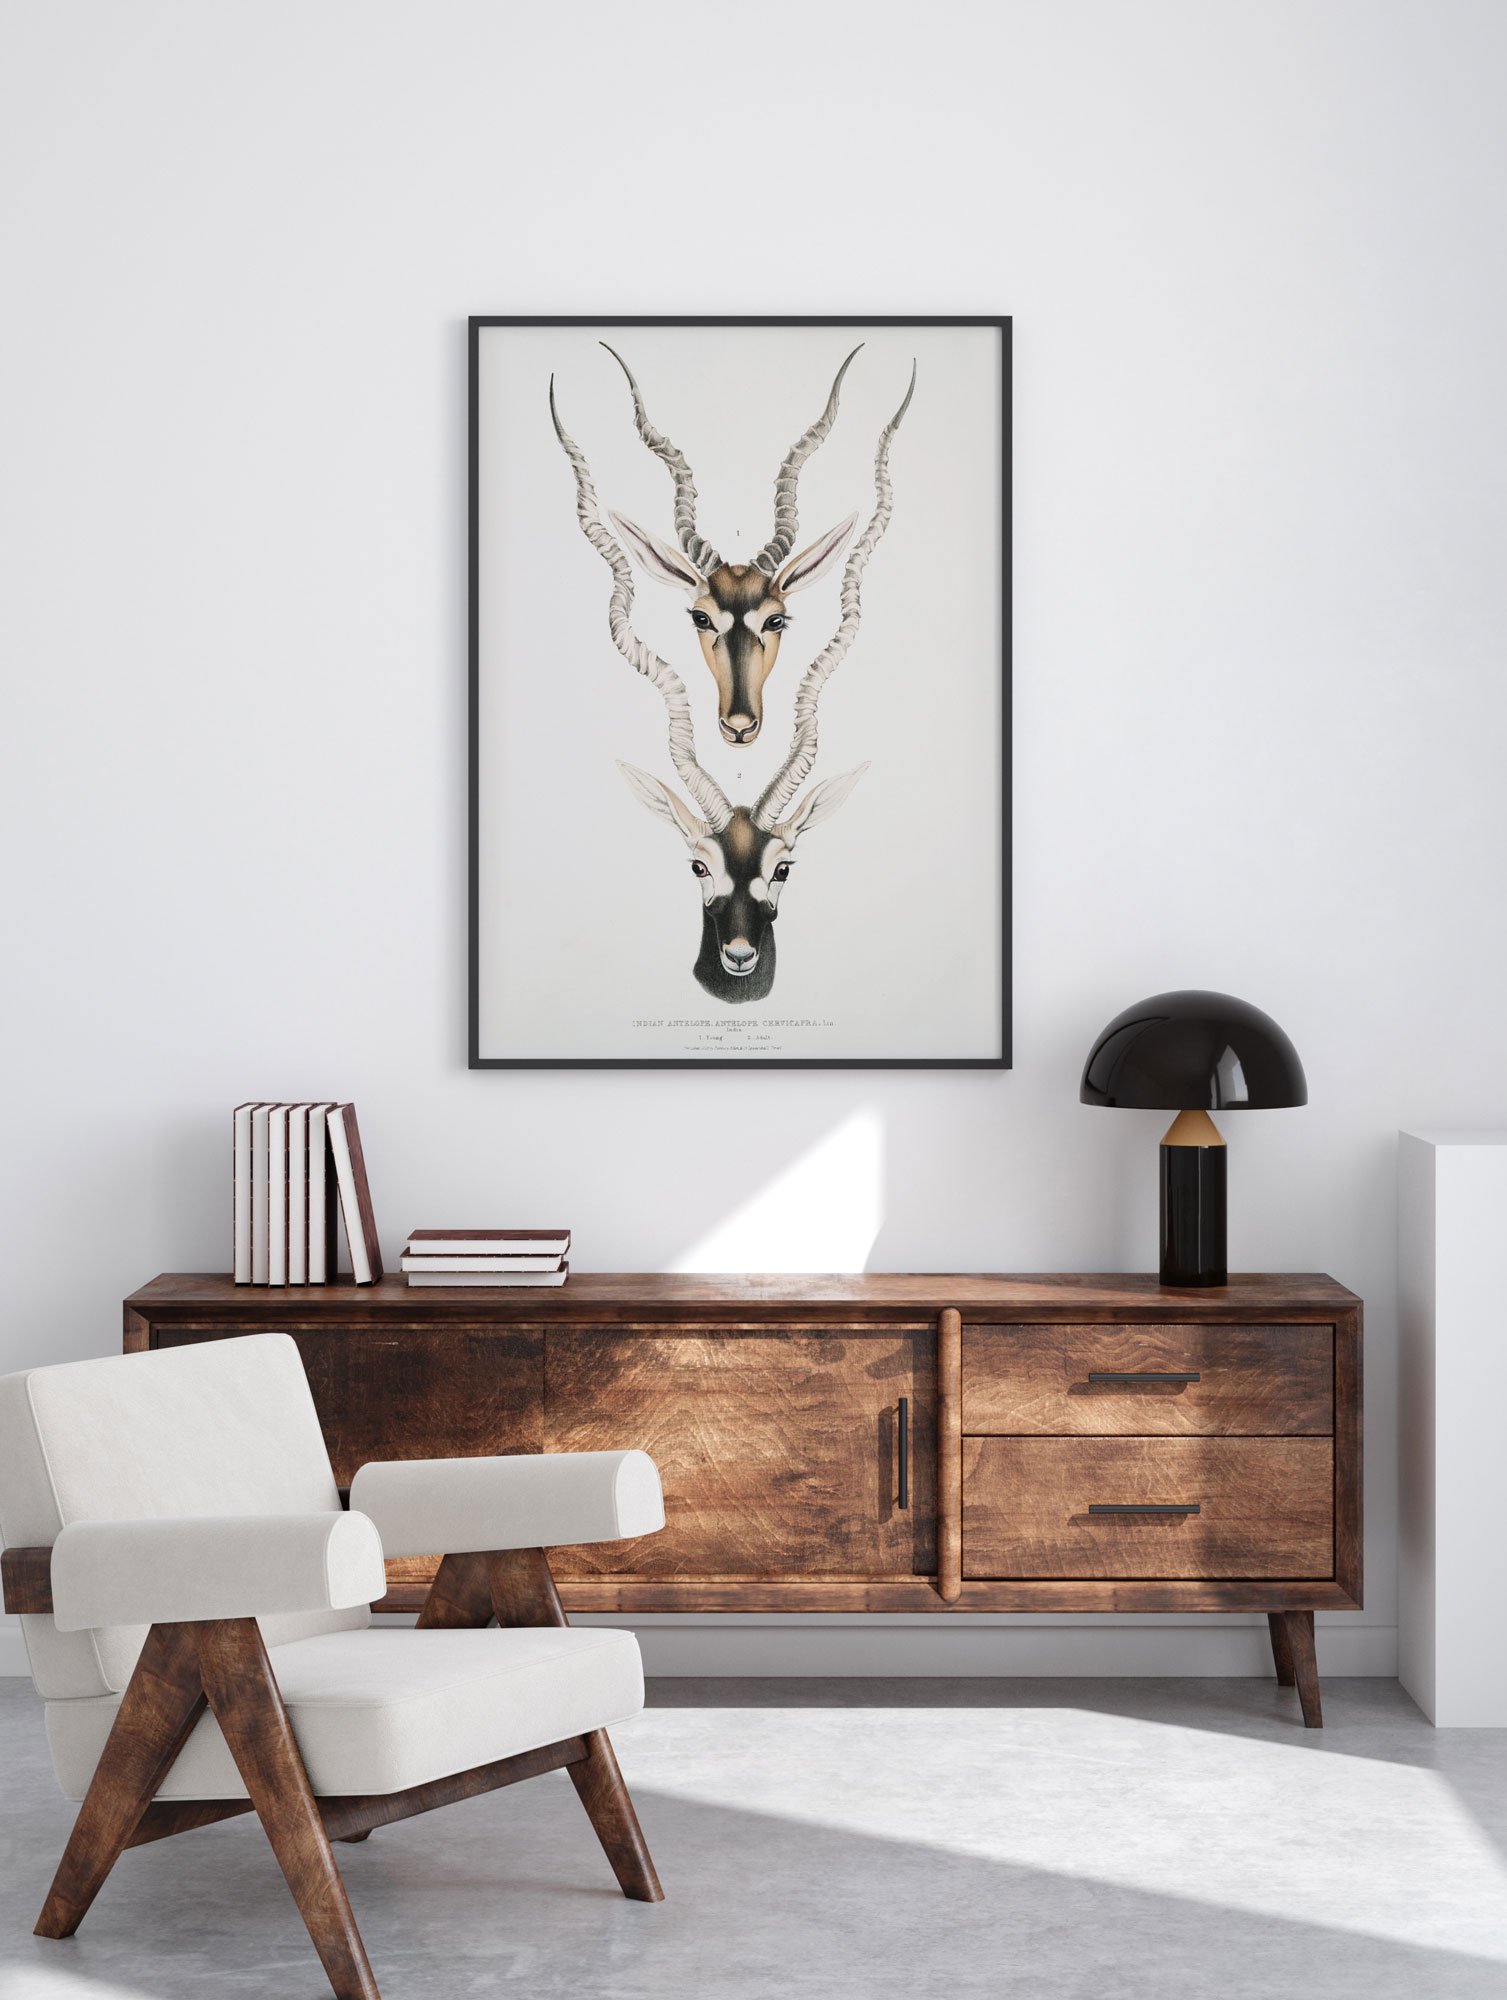 82 minimalistinis paveikslas - Indijos antilopė - John Edward Gray